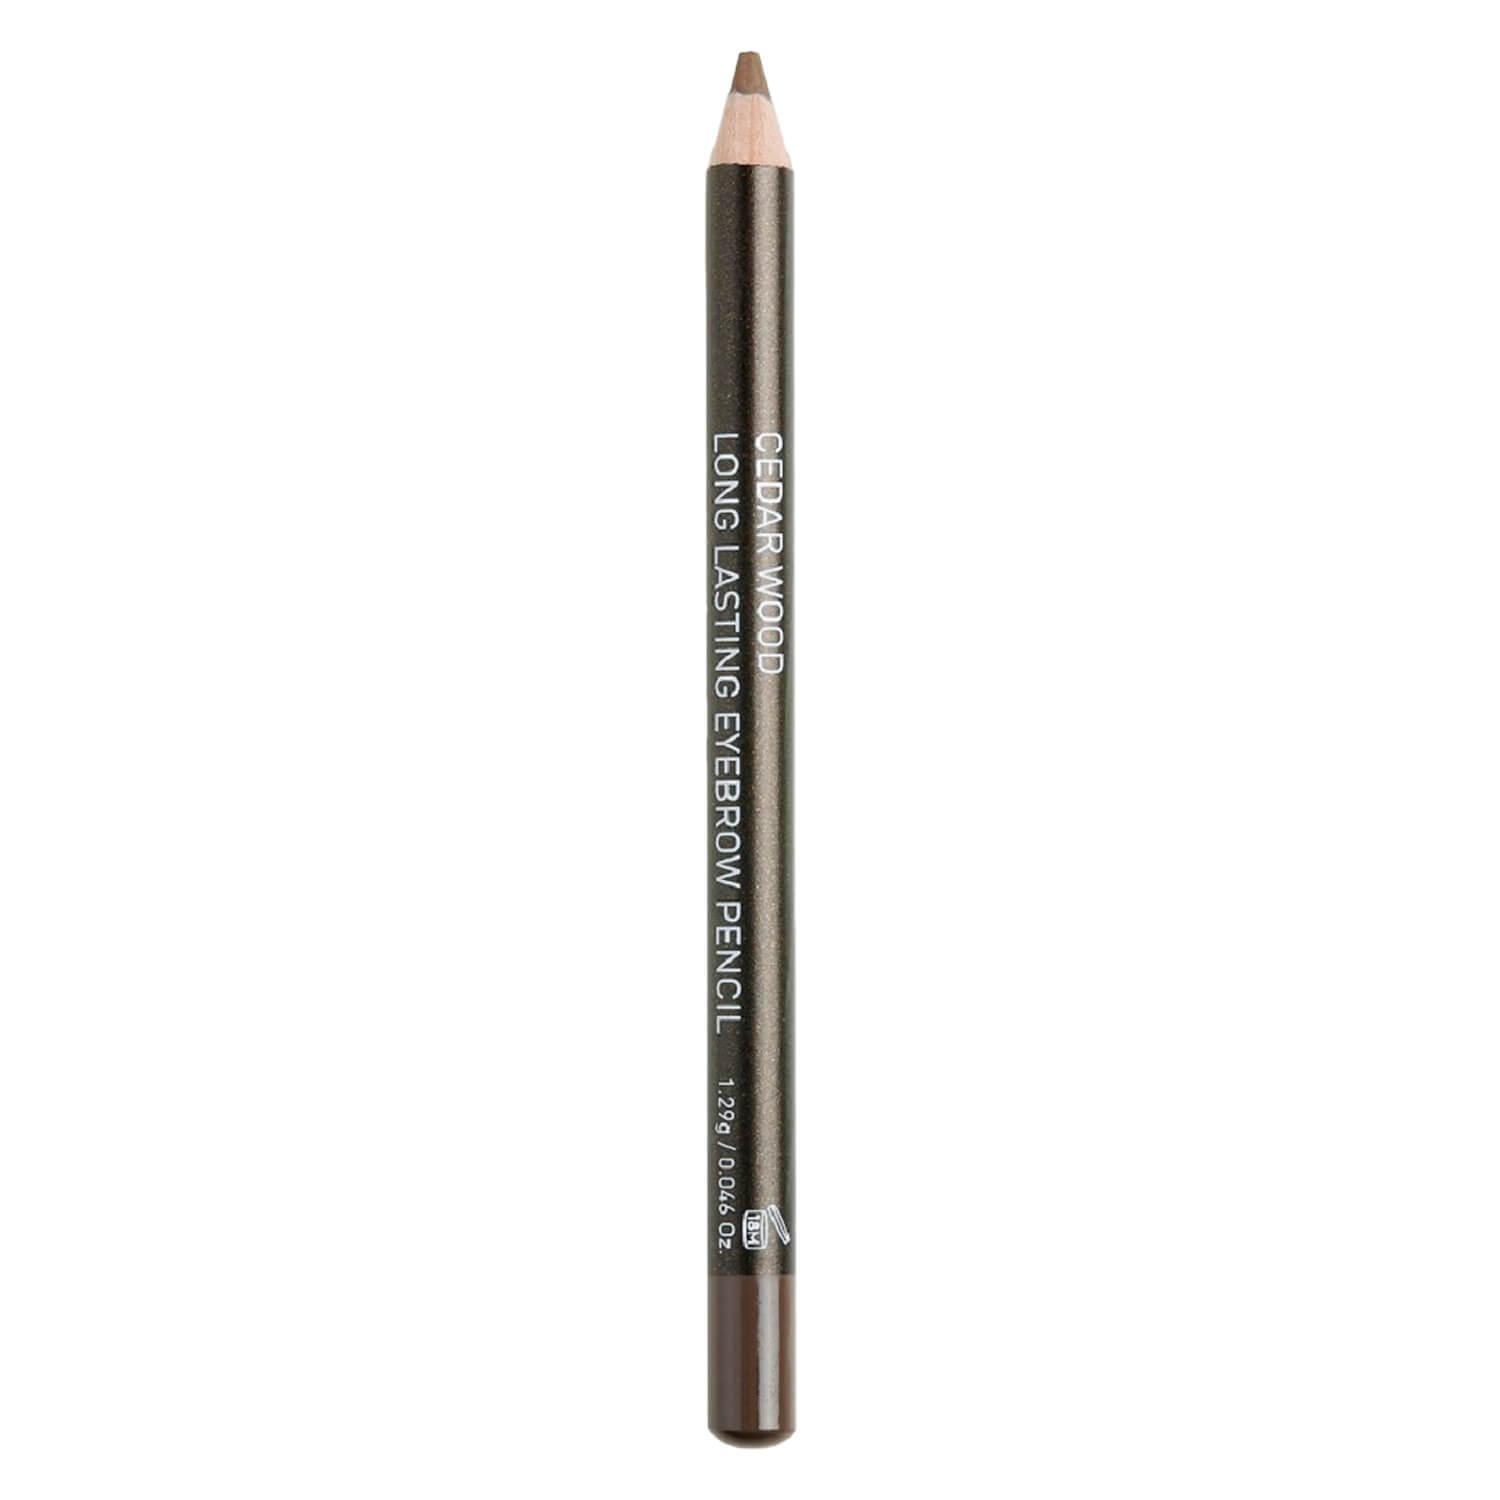 Korres Brows - Cedar Eyebrow Pencil No 1 Ombre foncée